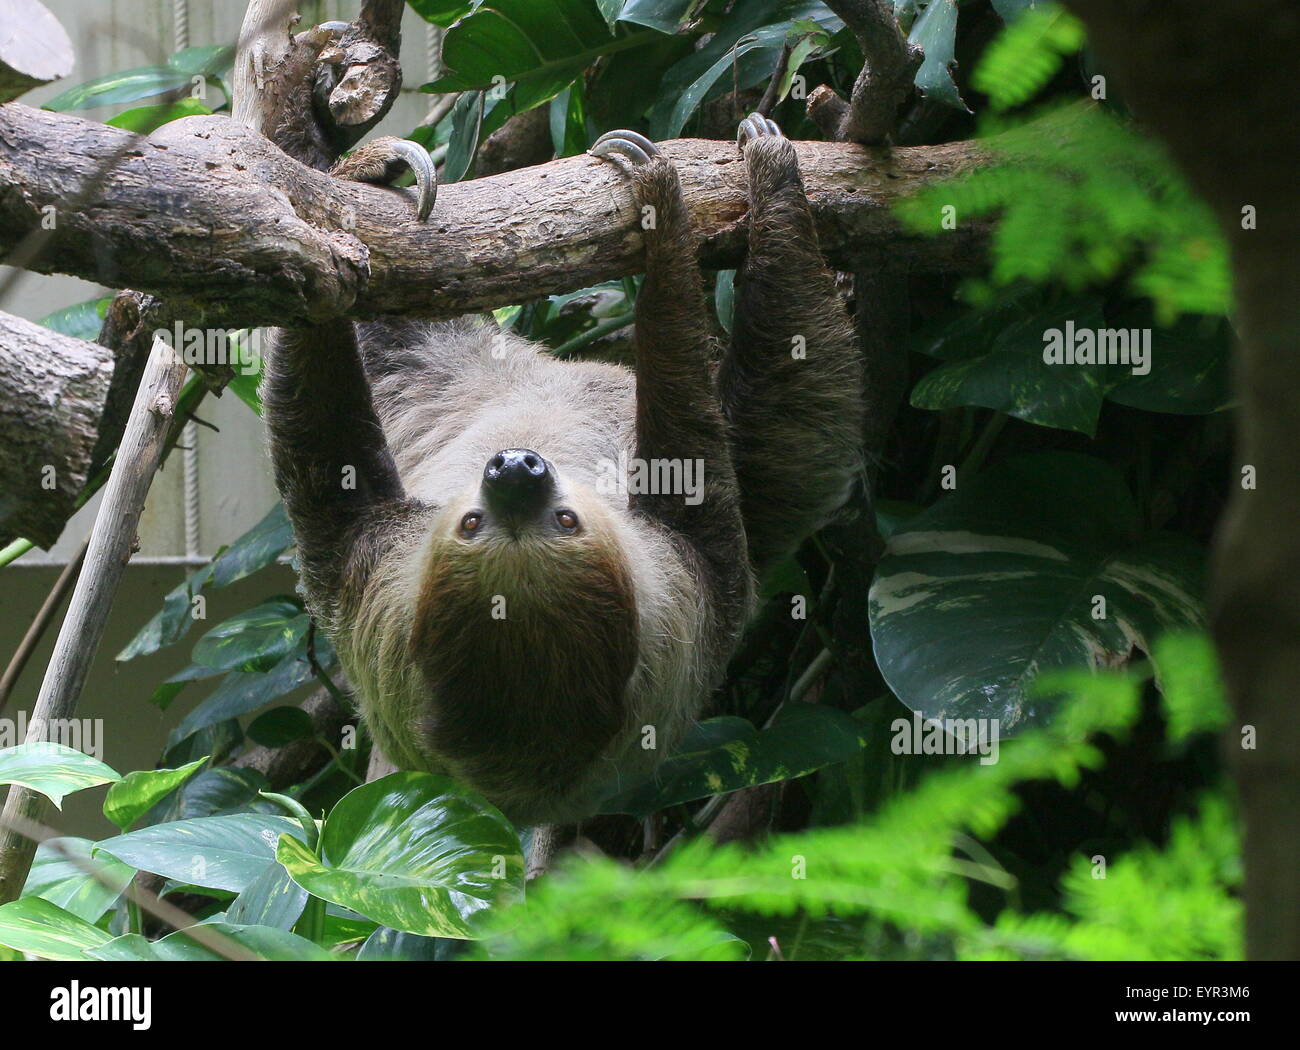 South American Linnaeus dos vetado pereza o del Sur dos dedos cada sloth (Choloepus didactylus) en el zoo Noorder Dierenpark Zoo, Países Bajos Foto de stock